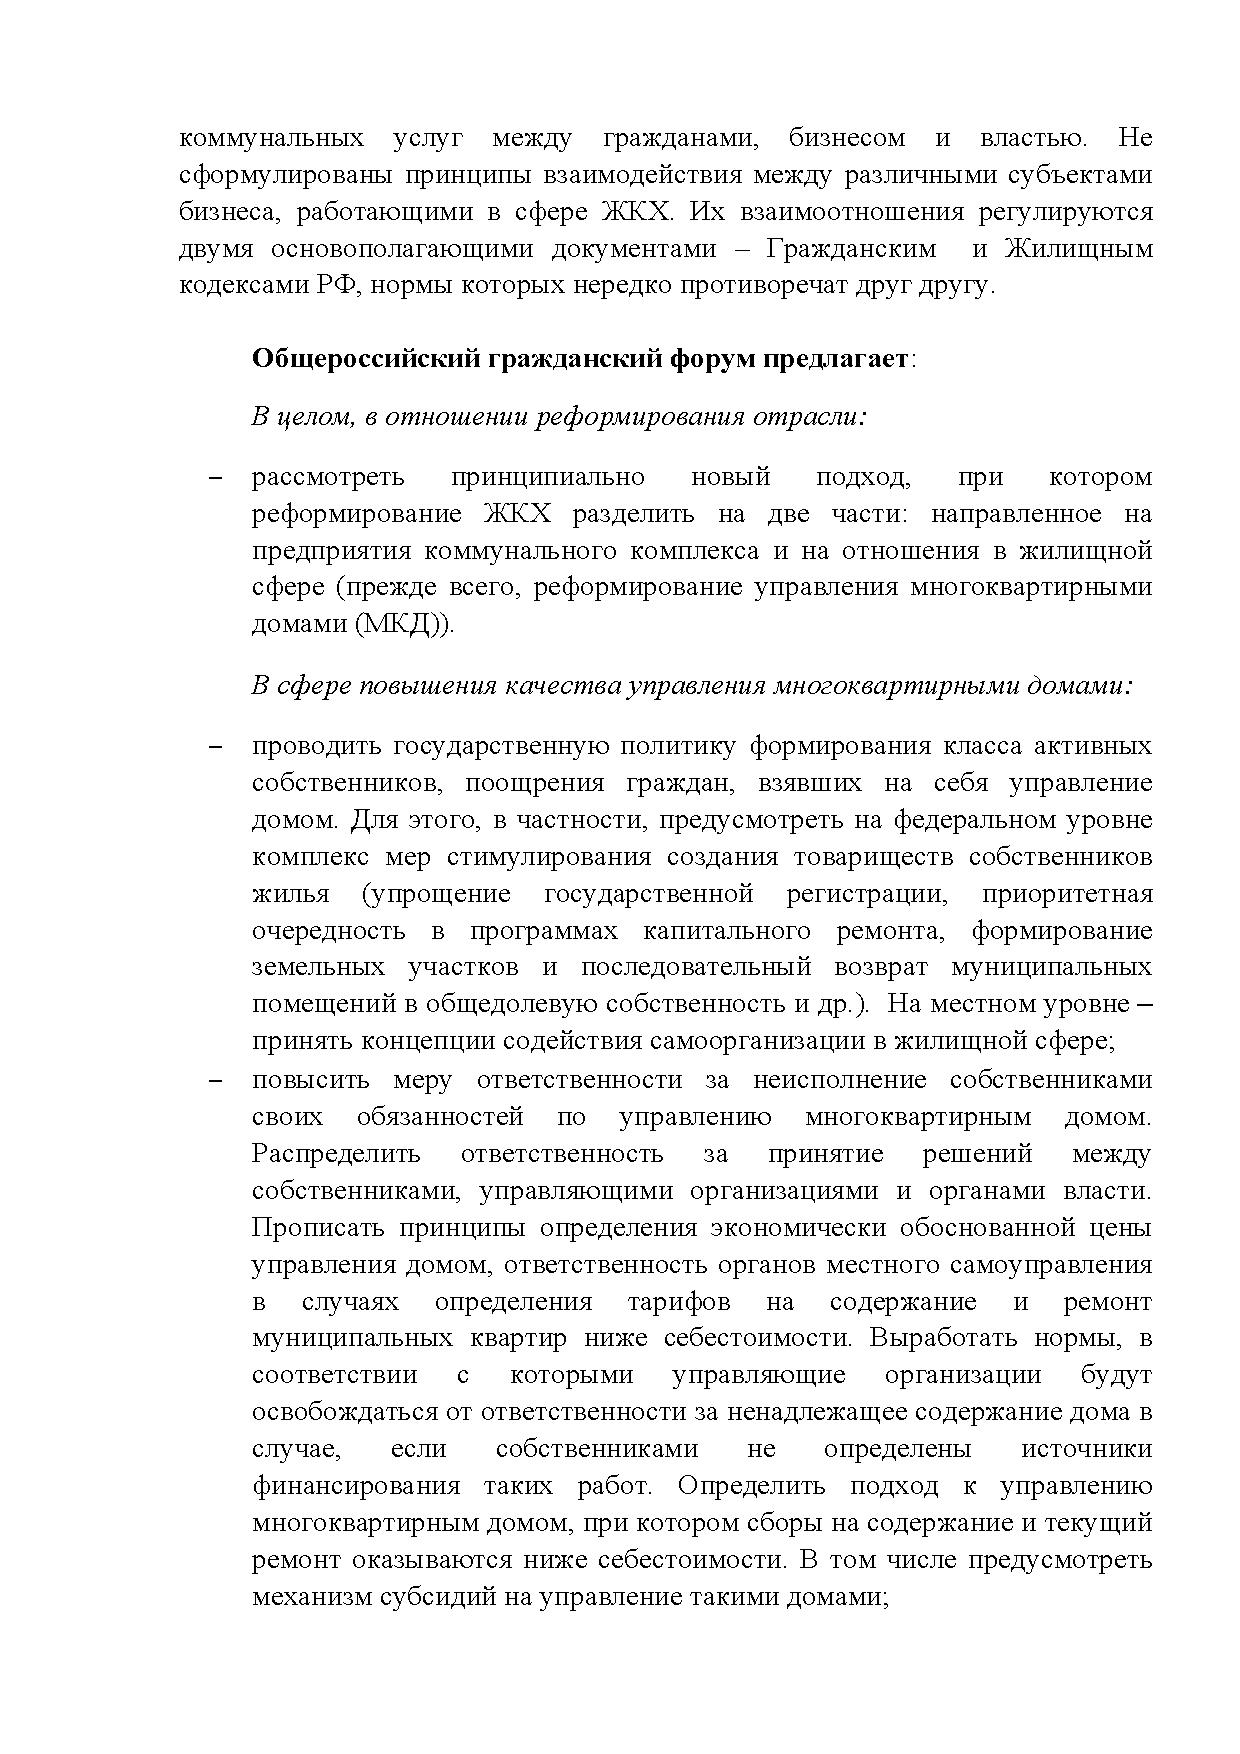  Опубликованы Предложения Общероссийского гражданского форума 2015 - фото 40